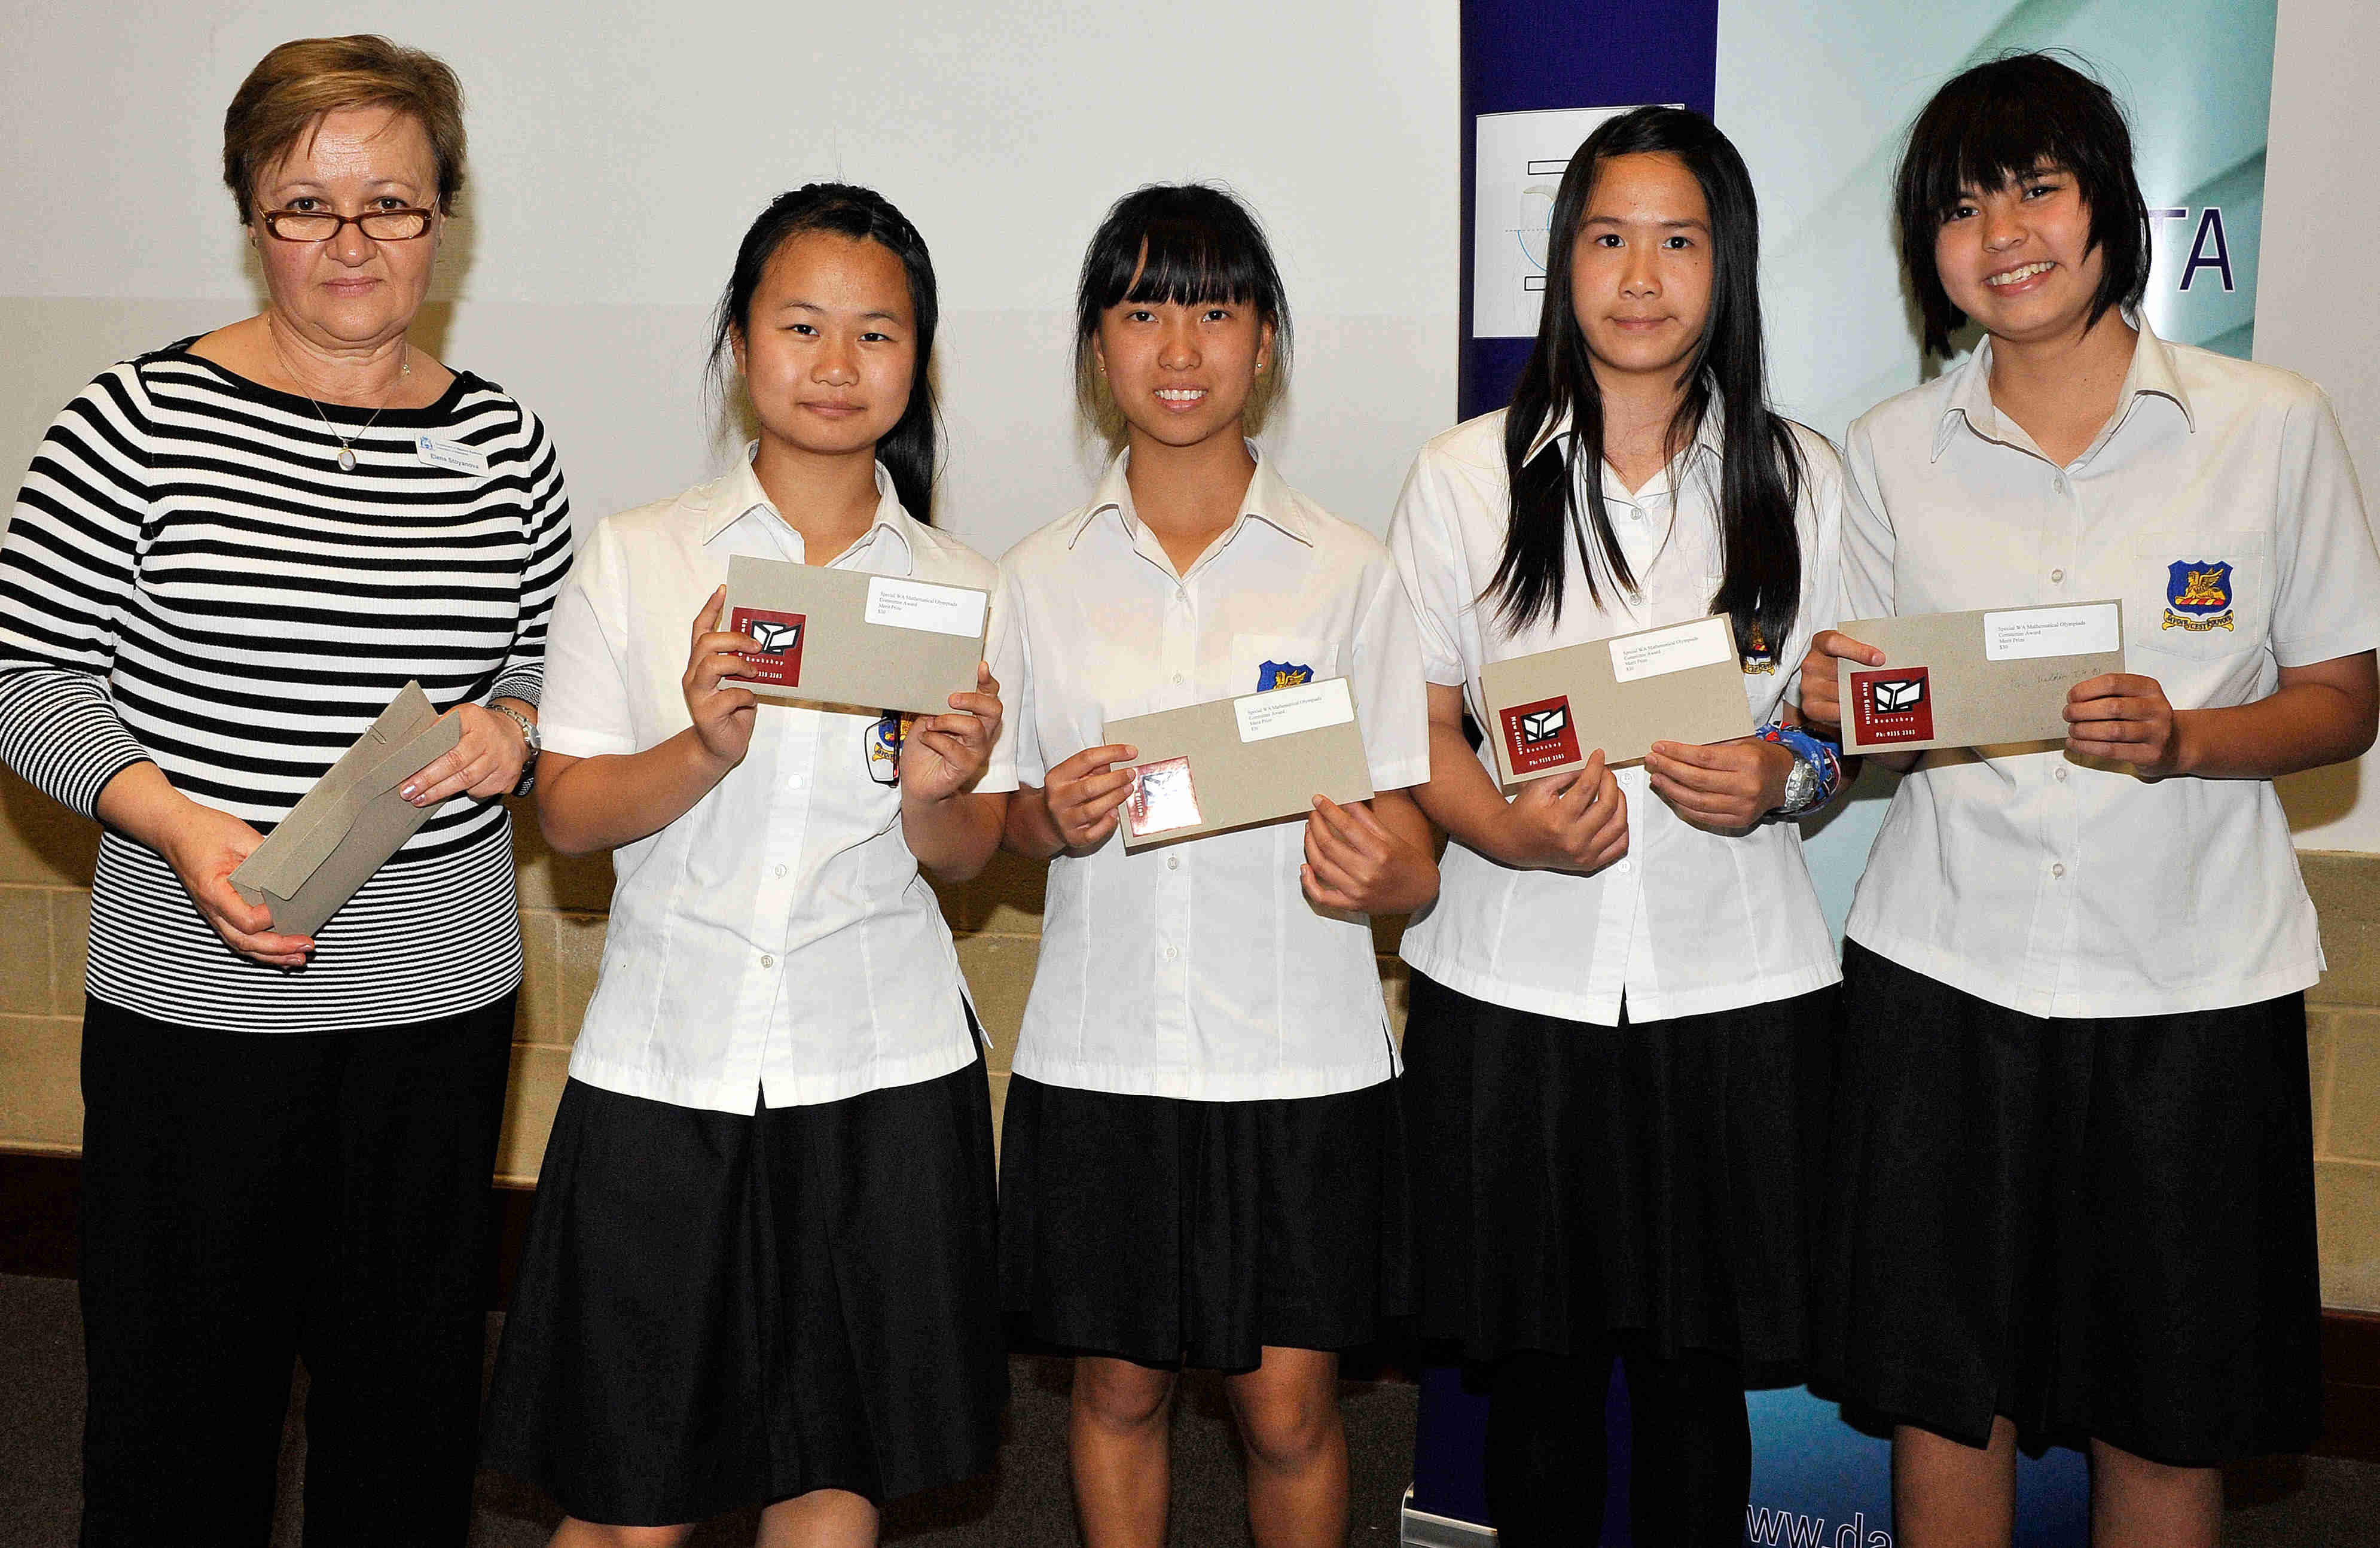 WAJO 2010 Awards: Team - Year 9 - Merit Prize